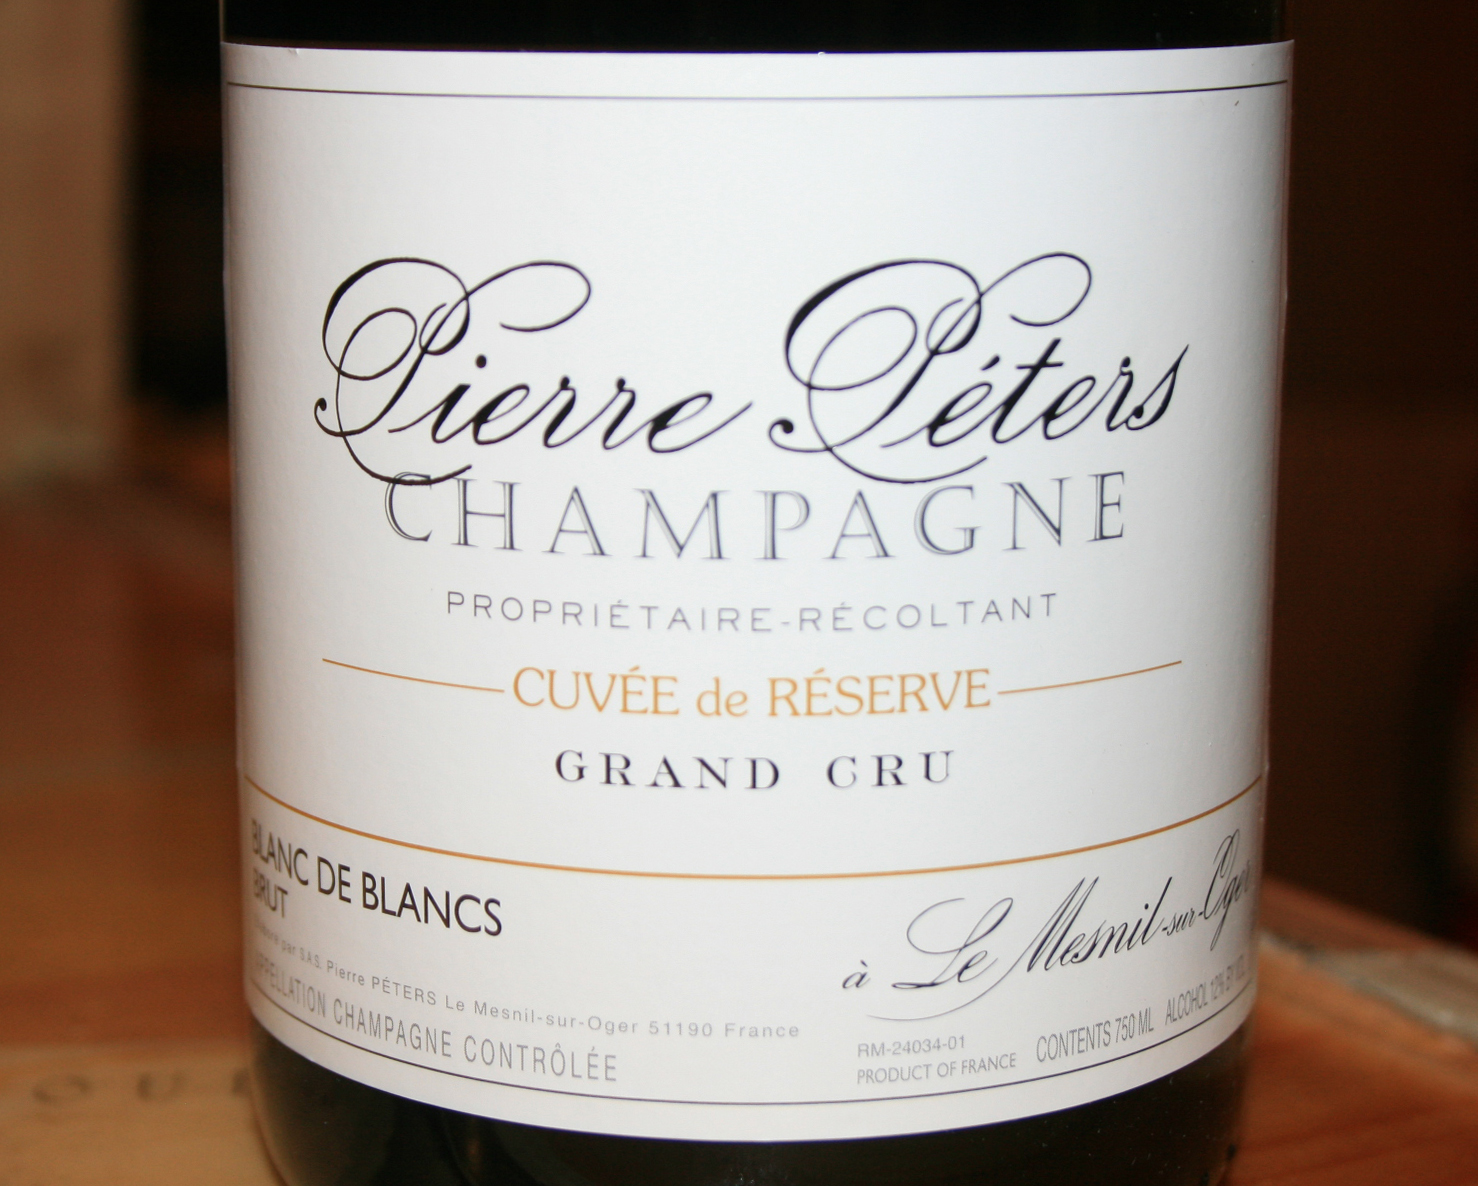 NV Pierre Peters Cuvee de Reserve Blanc de Blancs Champagne Brut - click image for full description